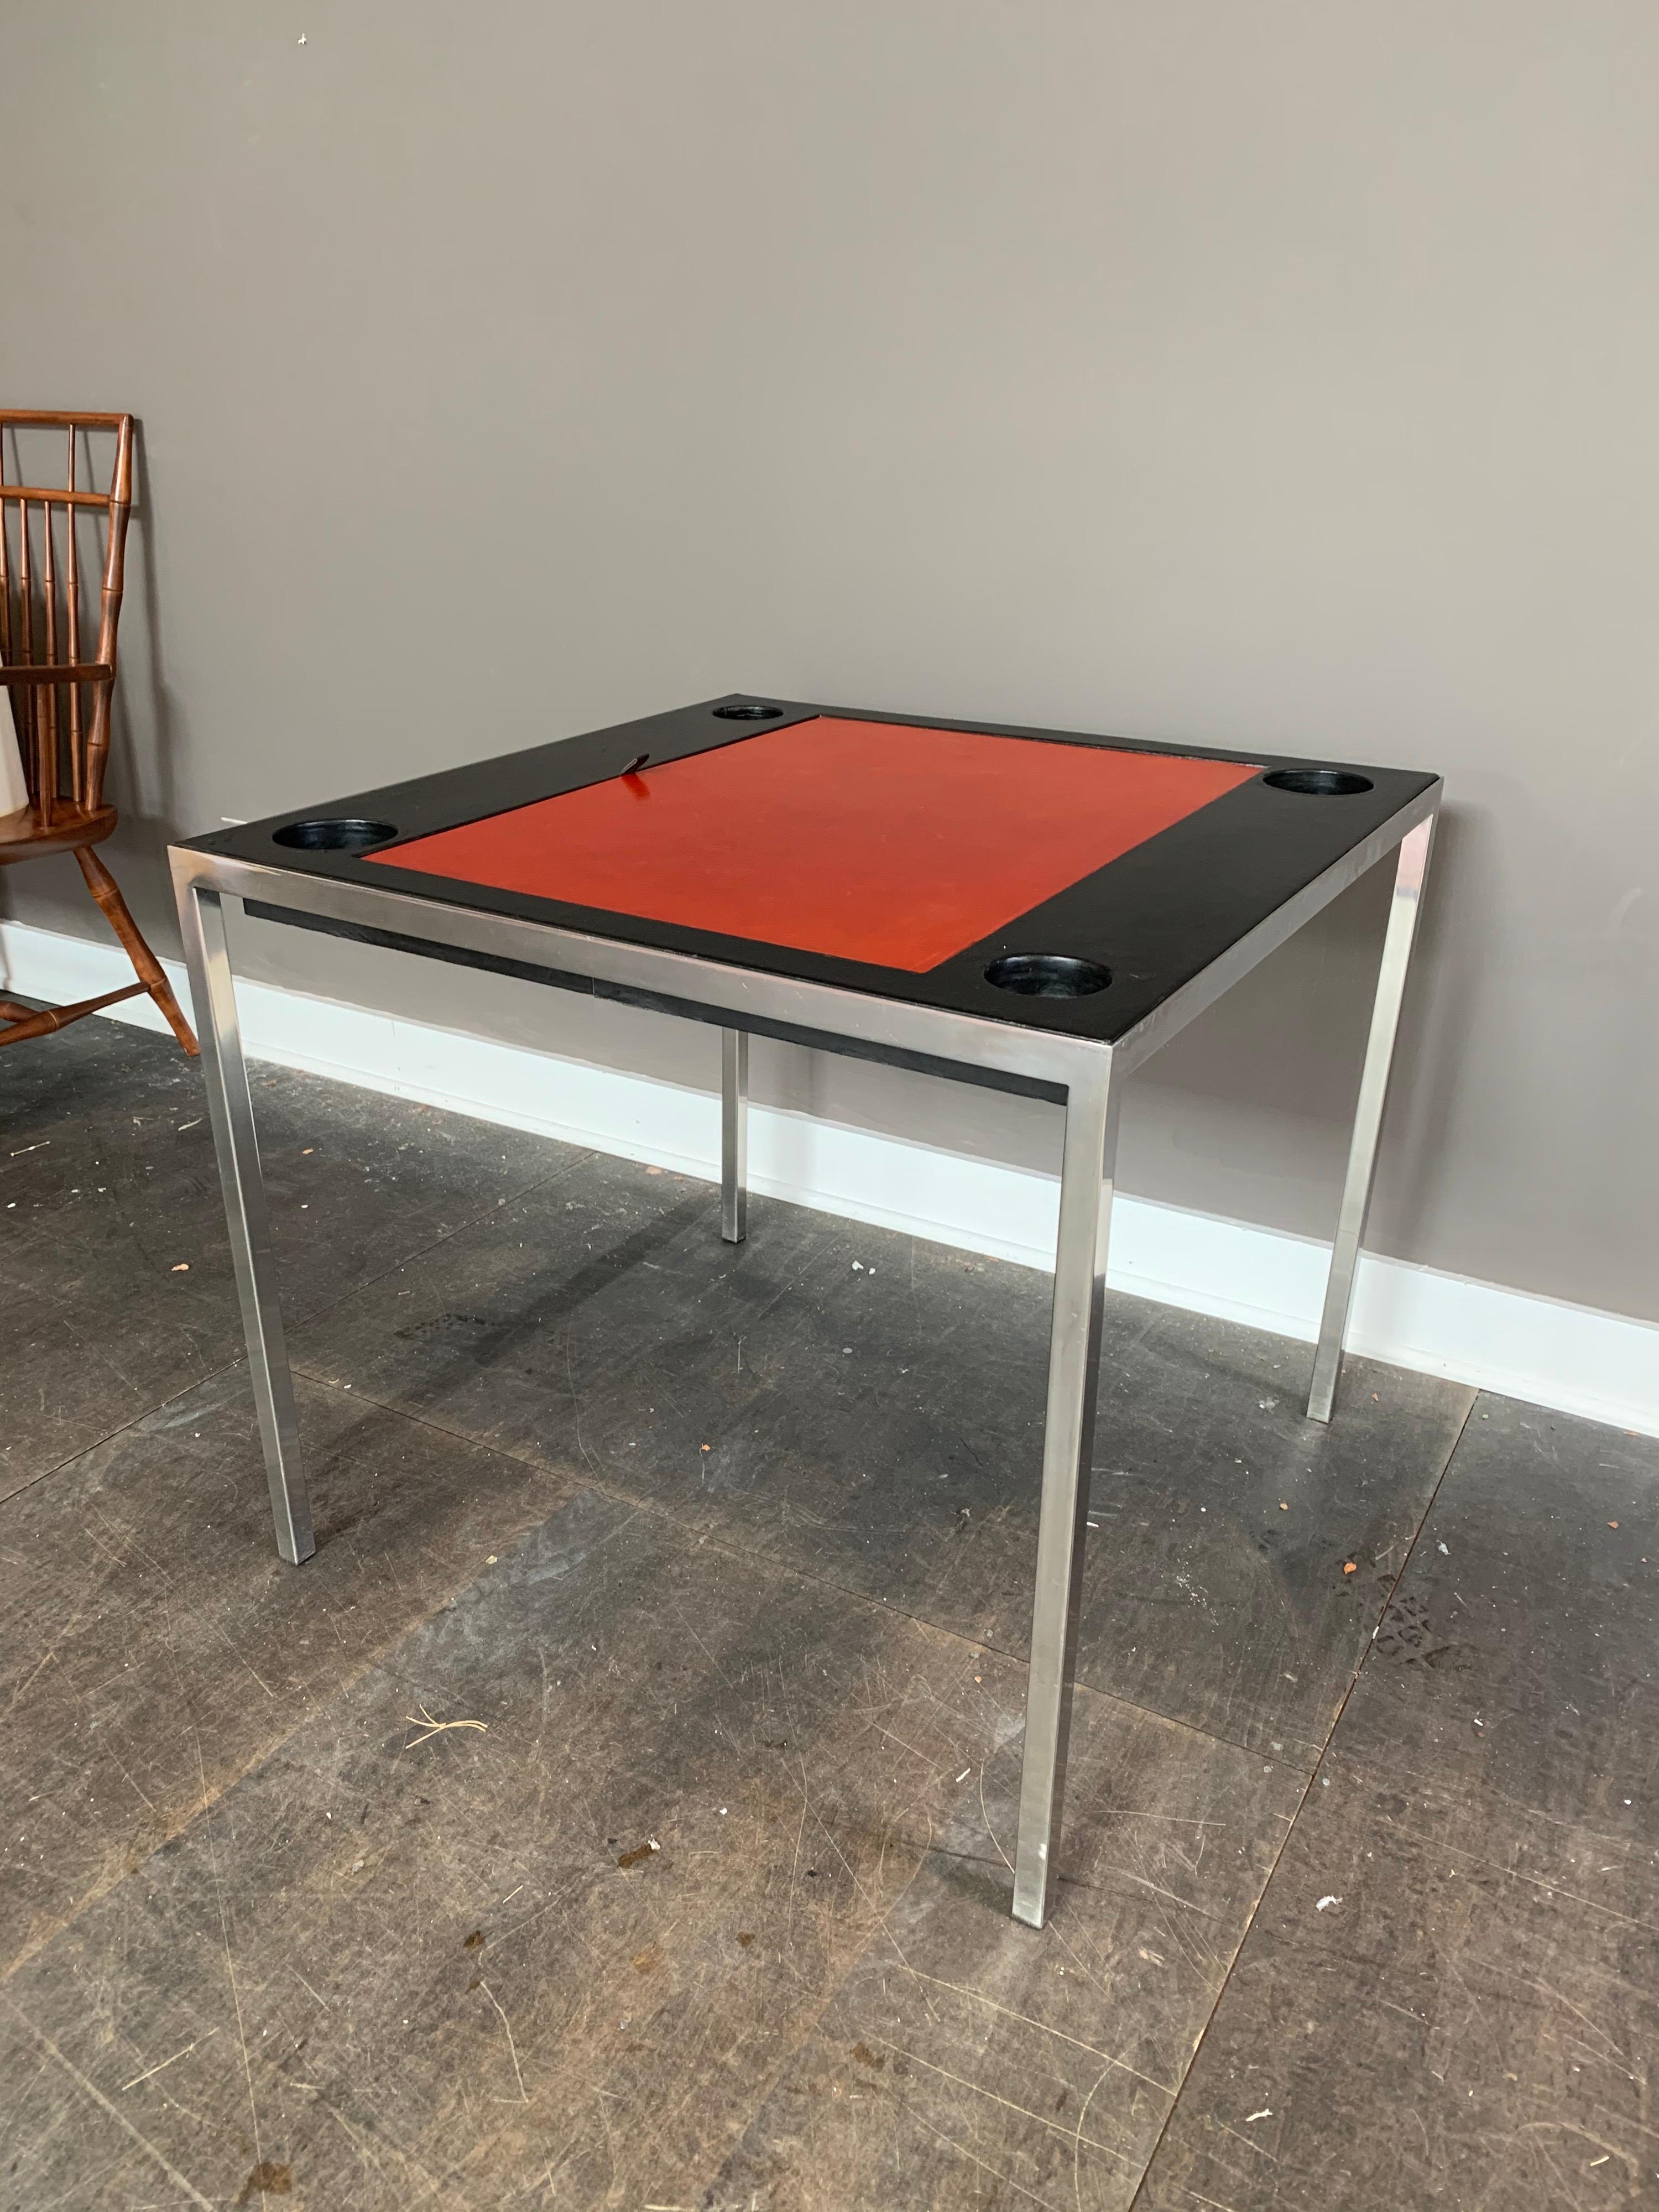 Estampillée Jansen, cette table de jeu de backgammon en acier chromé et cuir noir et rouge, circa 1975, provenance : Malmaison, Roger Prigent Enterprises. Cette belle table a un plateau en cuir rouge qui s'ouvre sur l'aire de jeu du backgammon. Bien